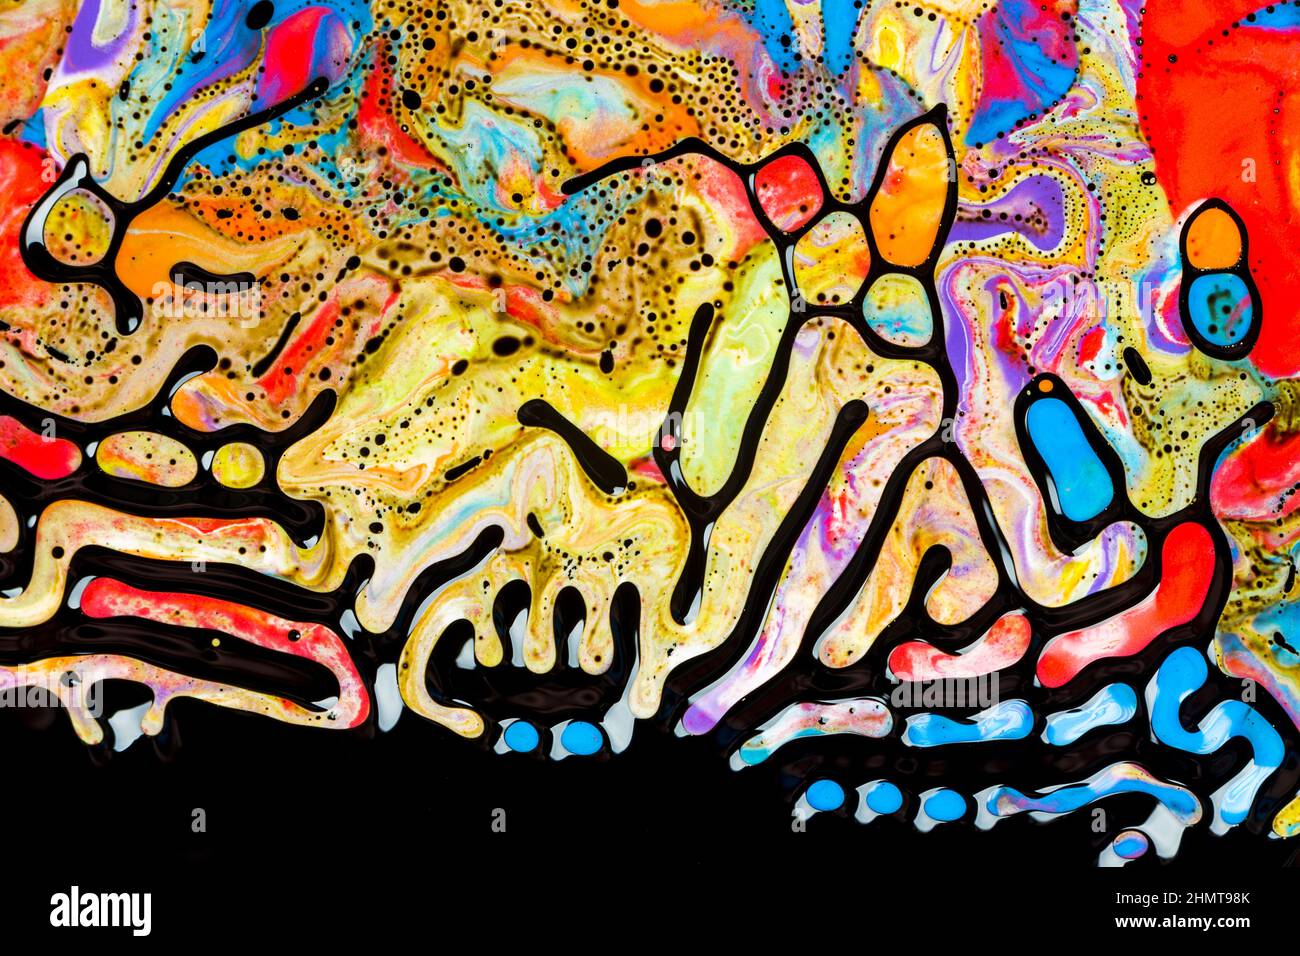 Vortice astratto, design artistico con colori a olio colorato o acquerello formando sorprendenti strutture complesse con ferrofluido Foto Stock